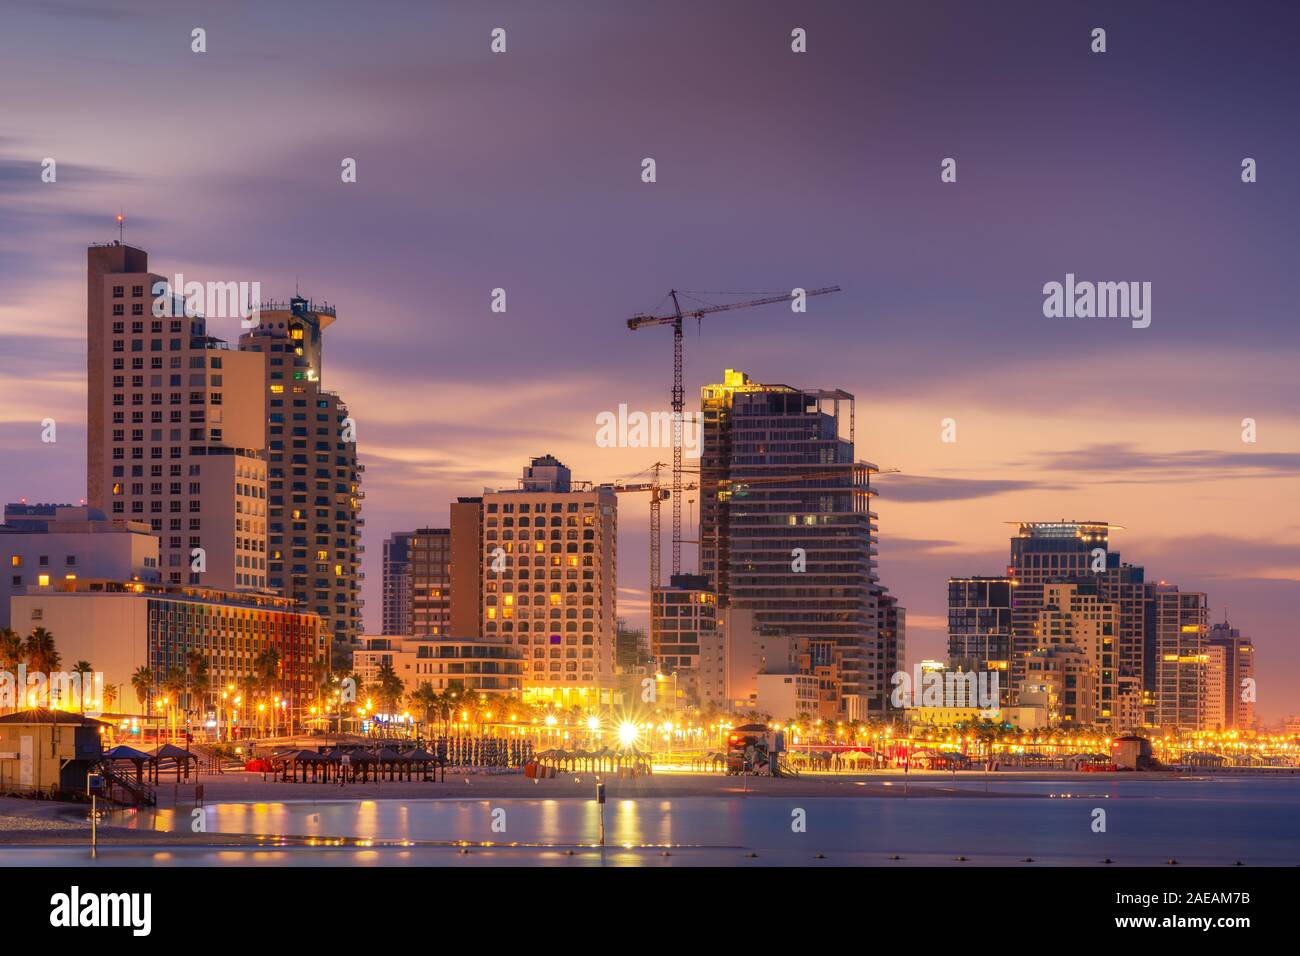 Tel Aviv Skyline, Israele. Cityscape immagine di Tel Aviv spiaggia con alcuni dei suoi famosi hotel durante gli orari di alba e notte Foto Stock